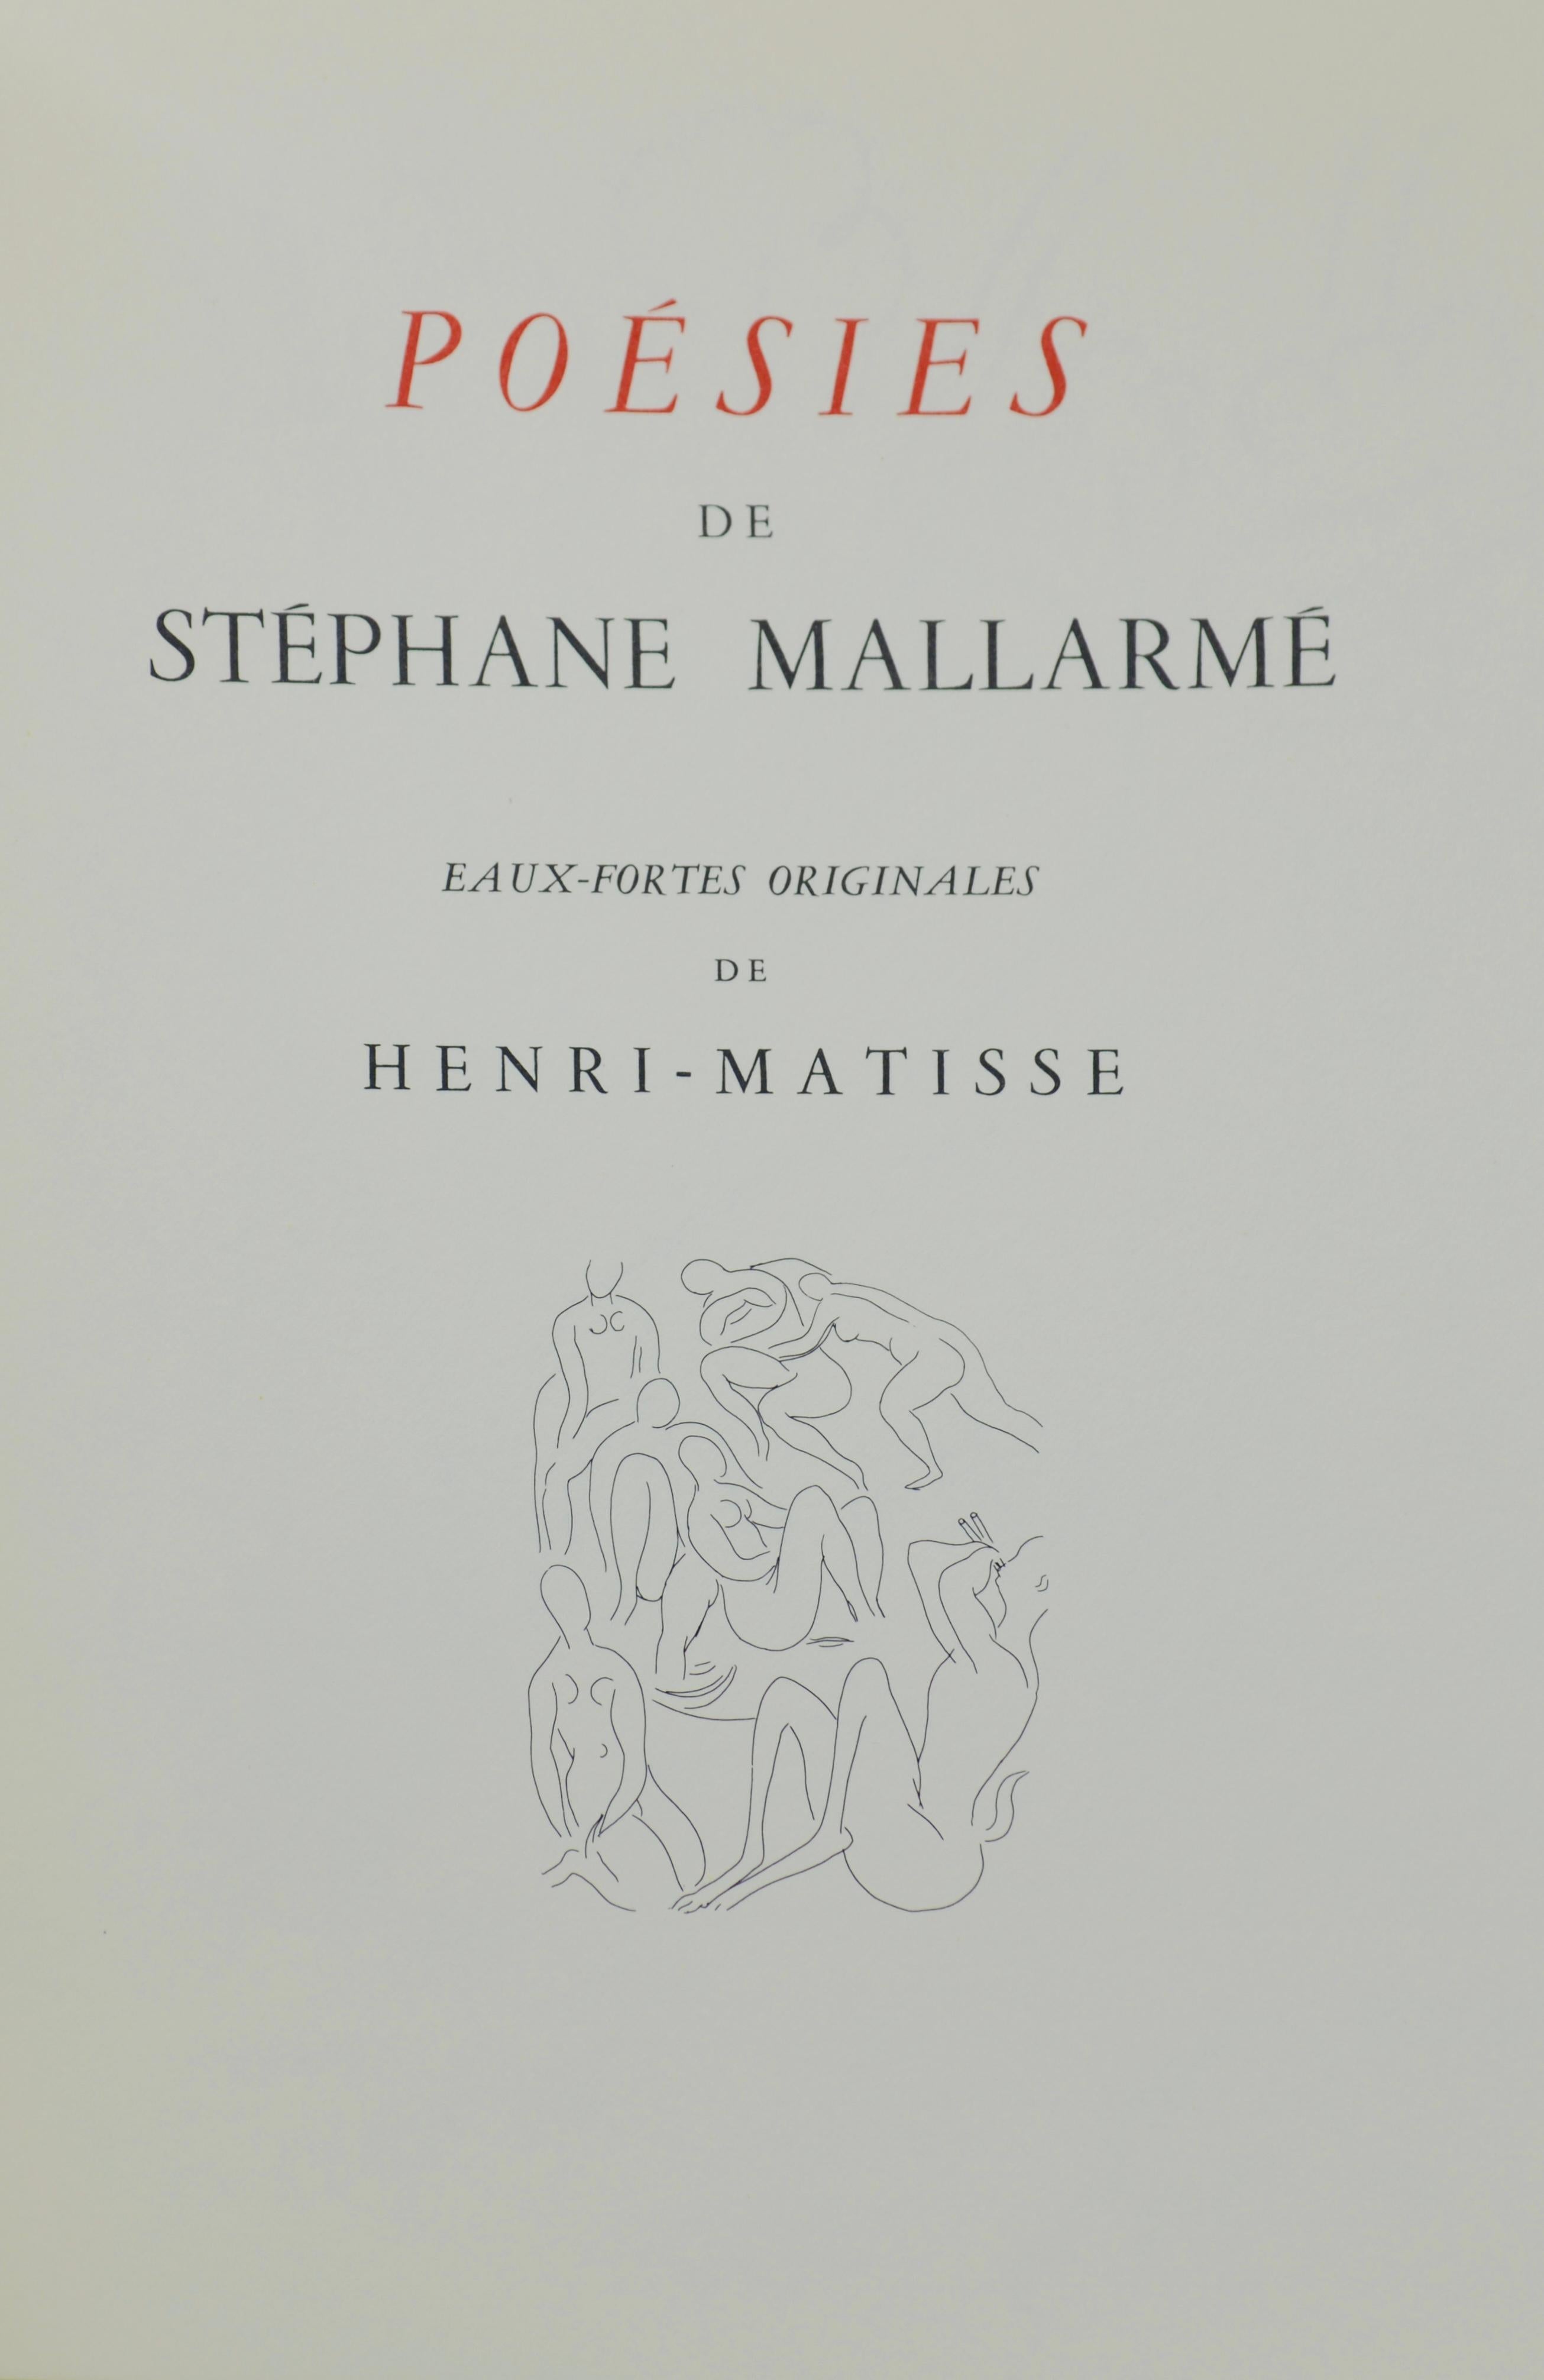 Matisse, Les Fenêtres (Windows), Poésies (after) For Sale 1